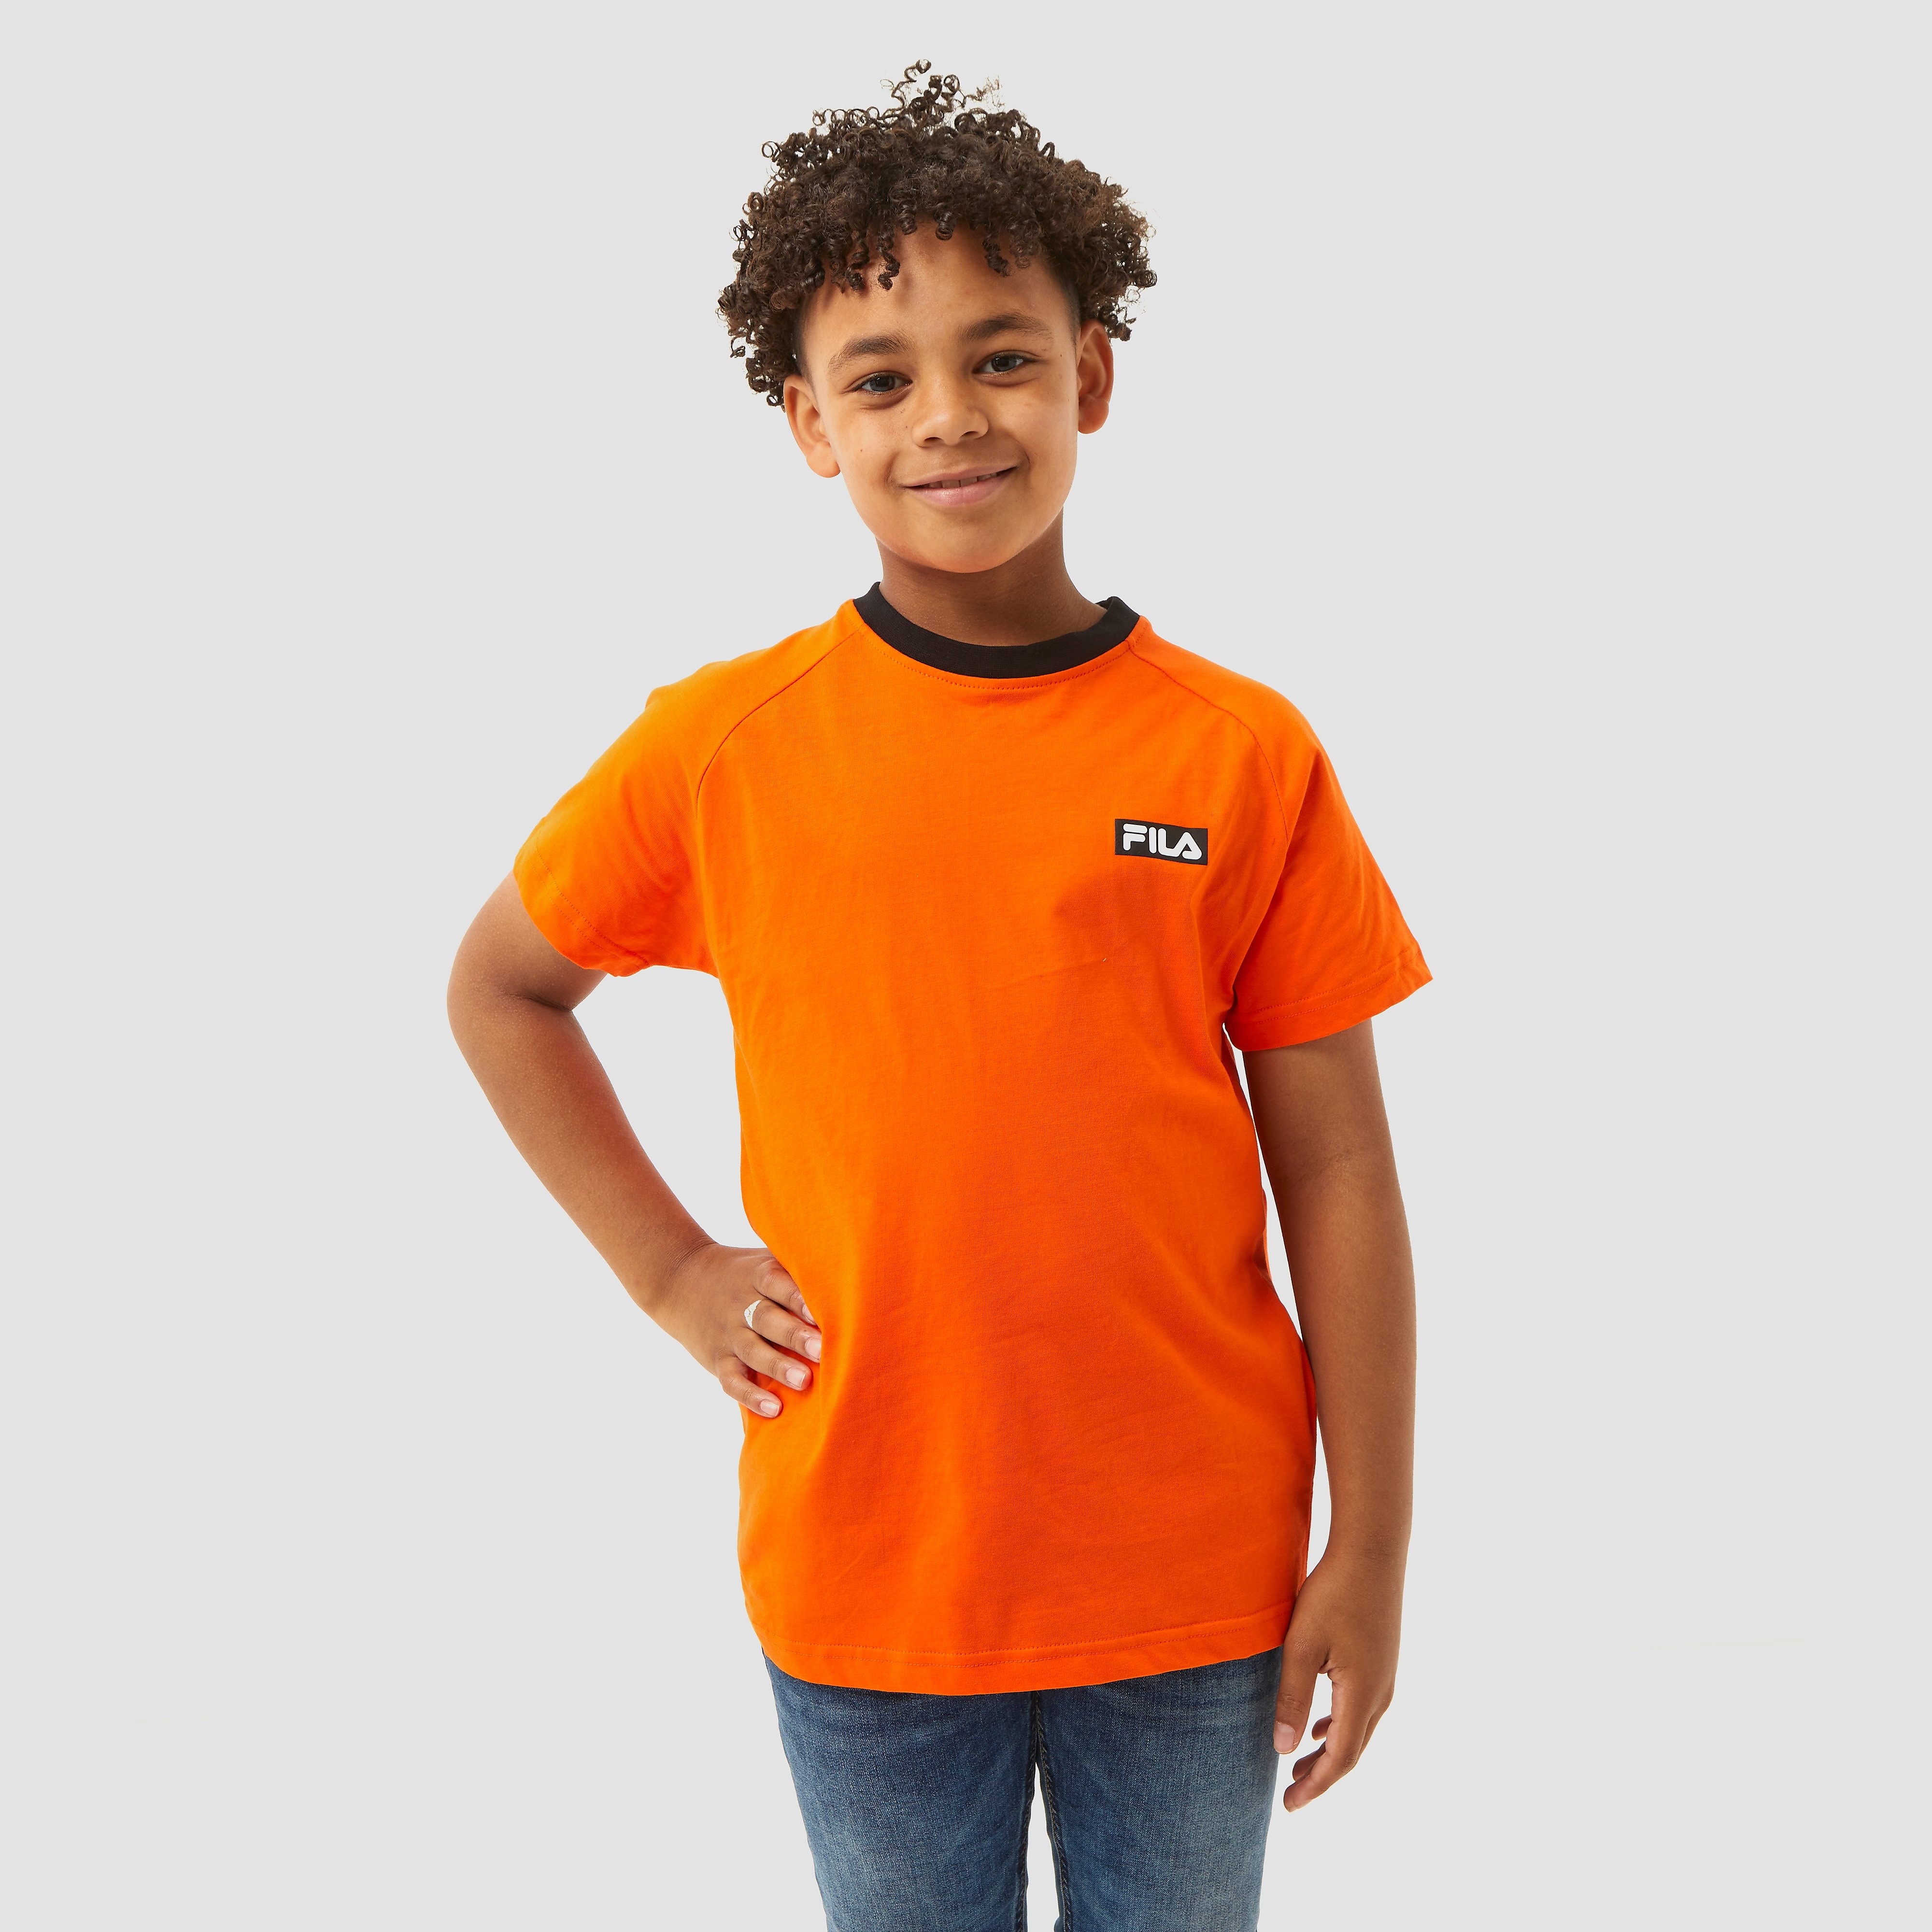 Fila Nederland Fanshirt Oranje Kinderen - Maat 128